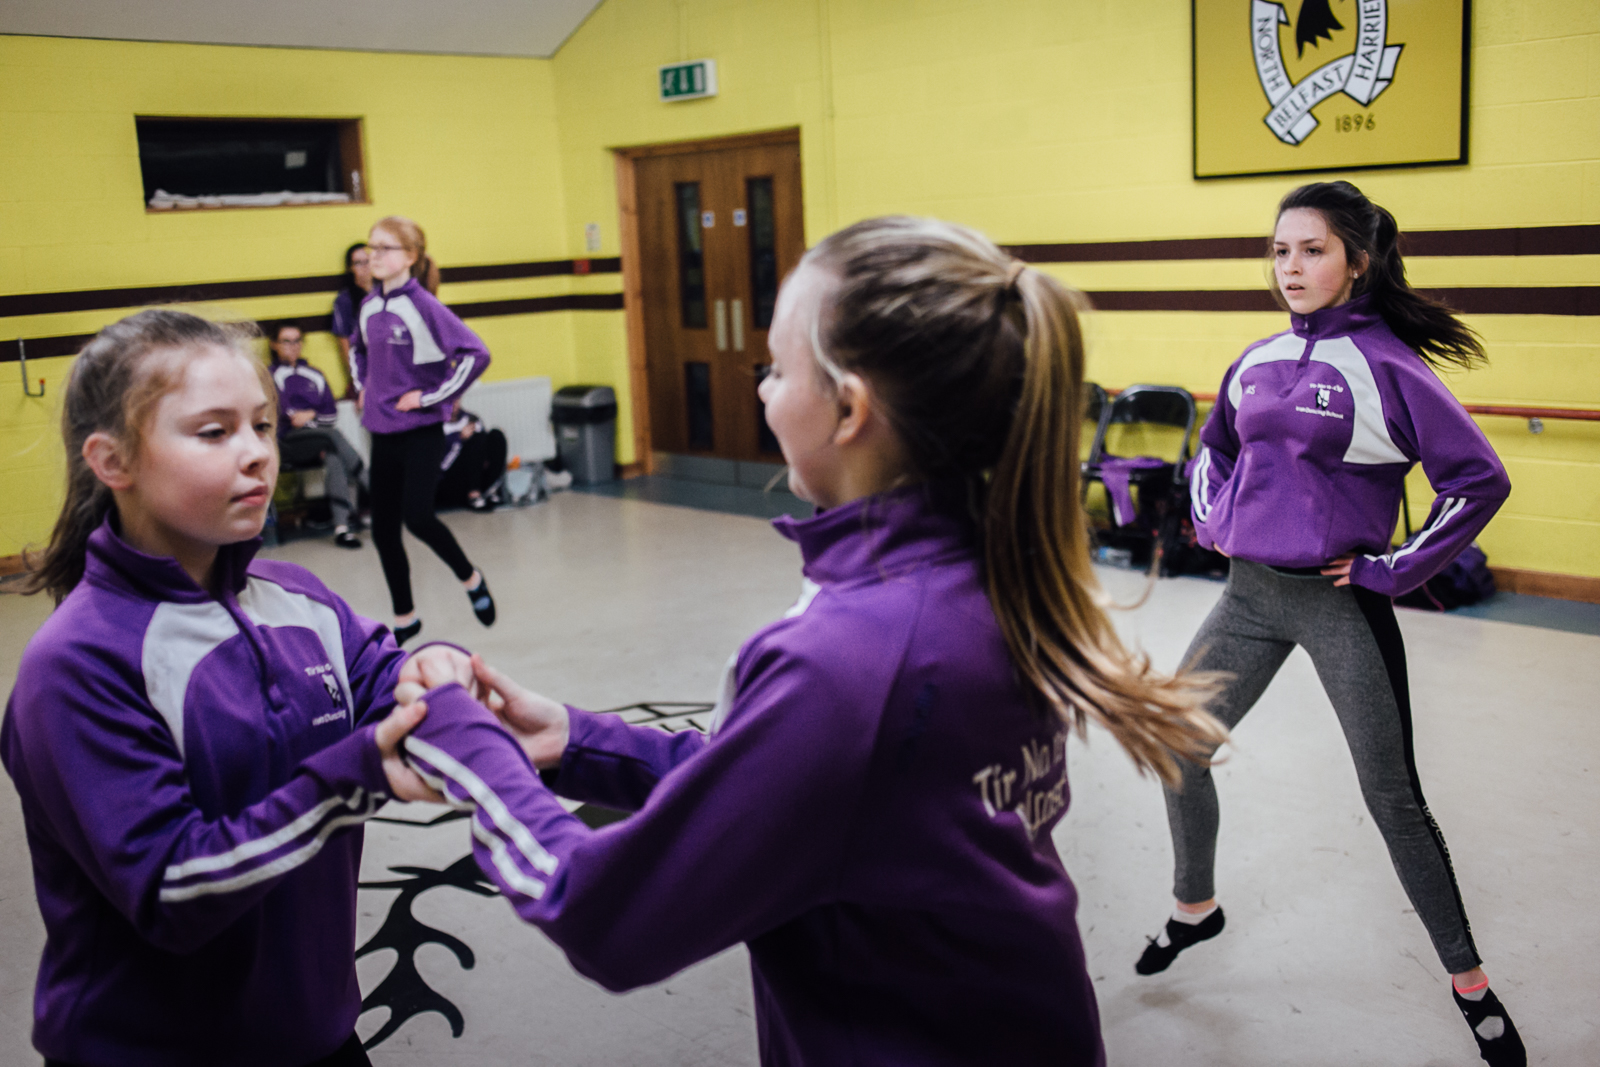 Belfast, le 1er Mars 2017. Une école de danse traditionnelle Irlandaise. Sa particularité est qu'elle est une unitiative de paix. En effet, elle mélange des élèves issues de familles protestantes comme catholiques. Le choix de la couleur (violet) a pour but de choisir une couleur neutre au conflit entre les factions.